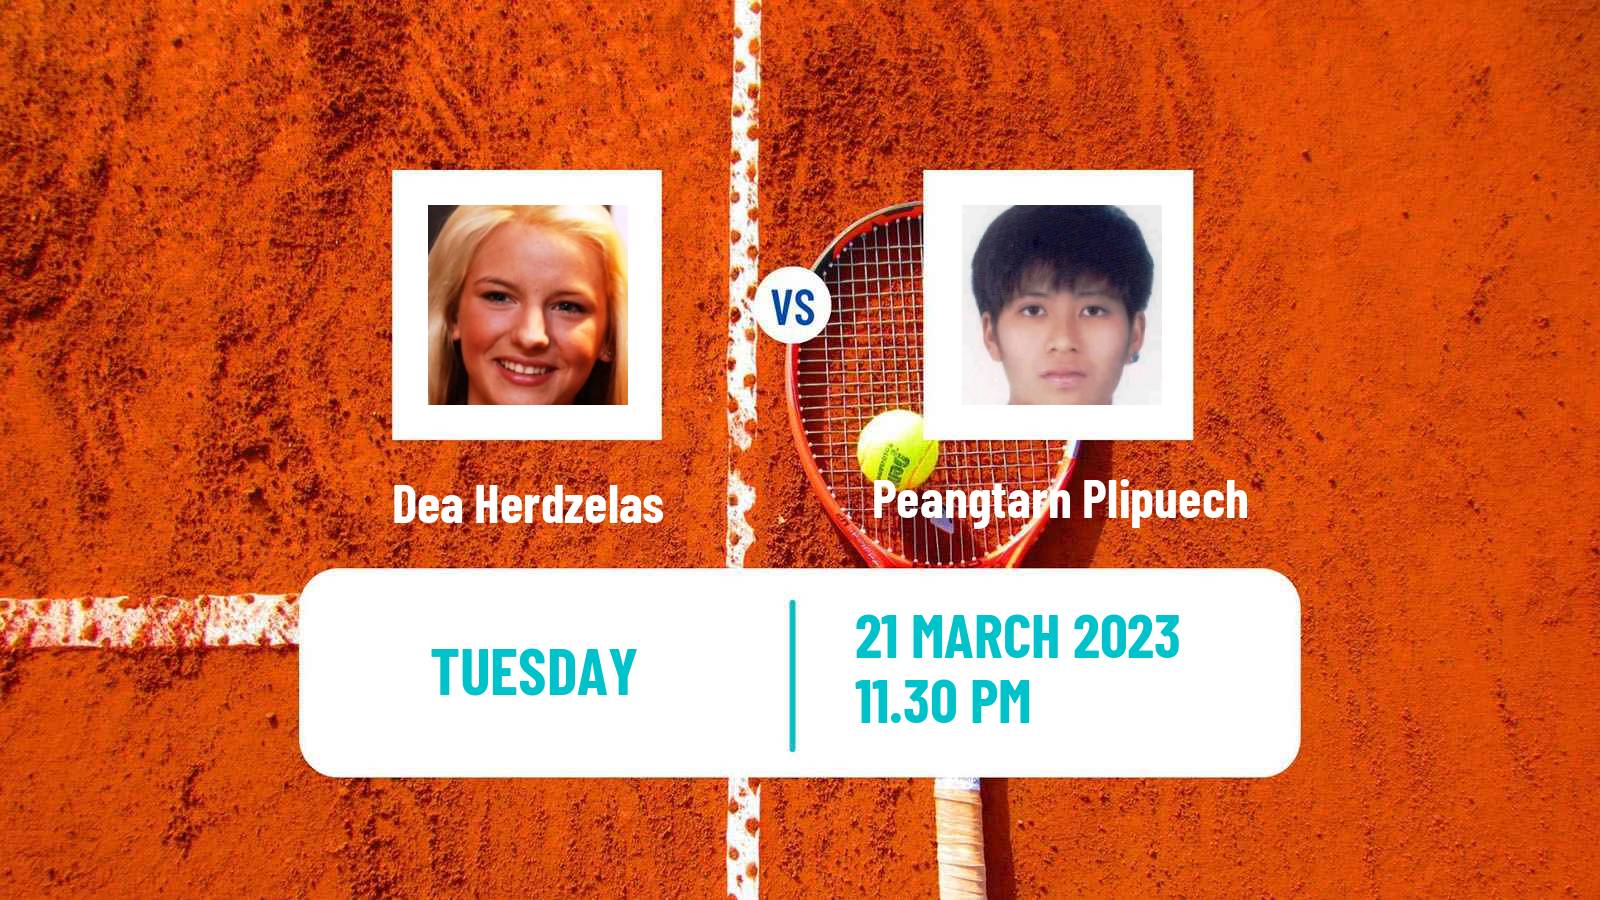 Tennis ITF Tournaments Dea Herdzelas - Peangtarn Plipuech